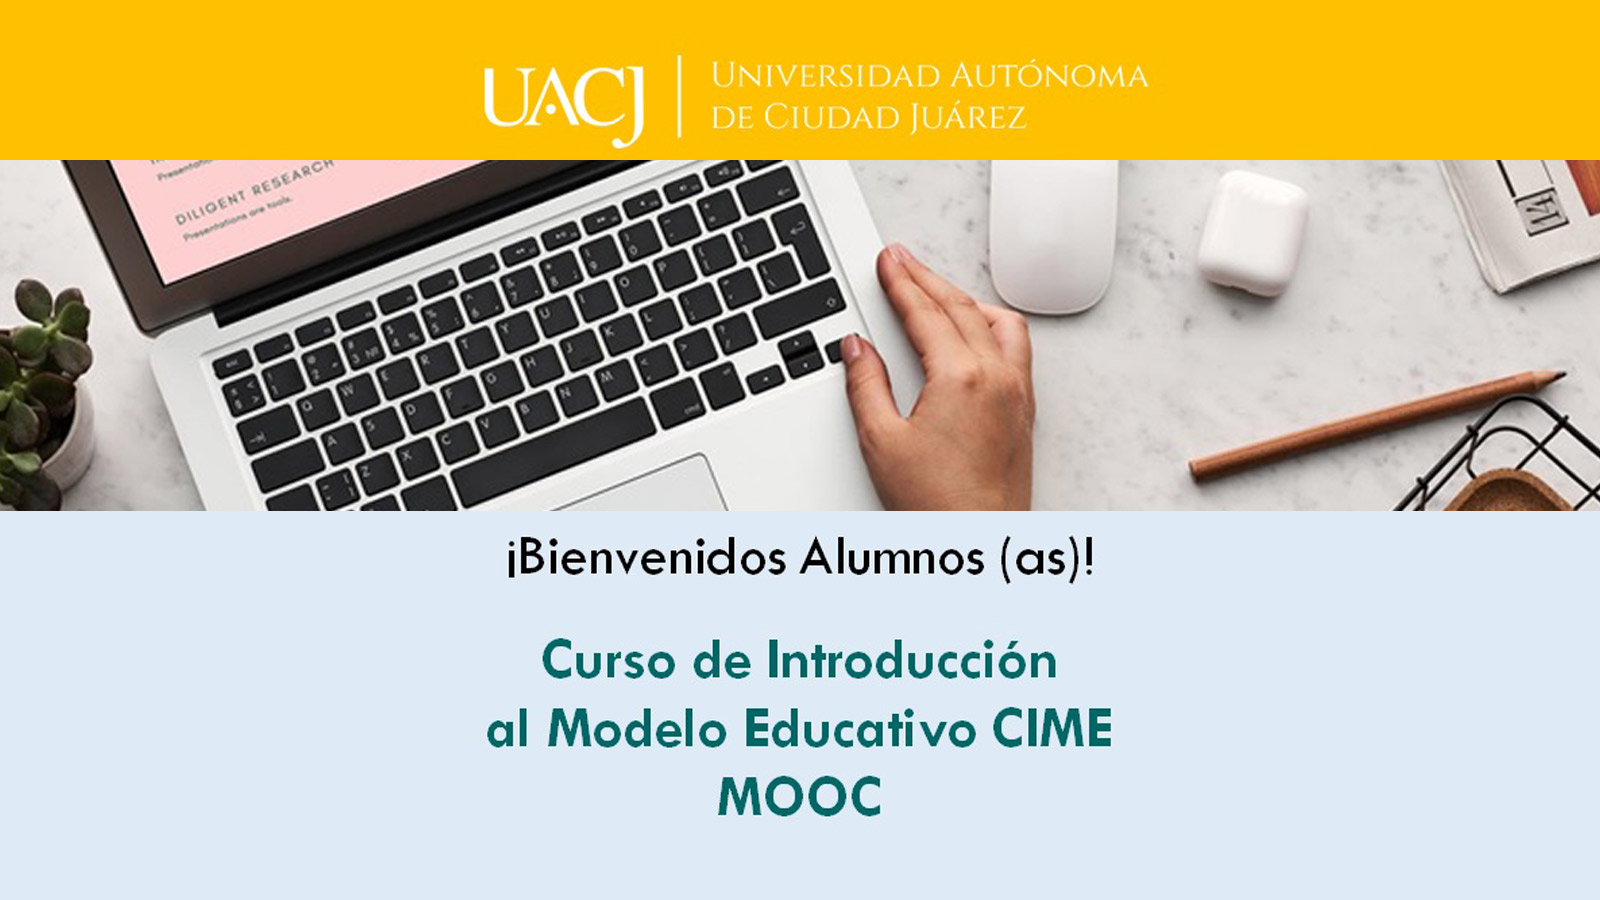 La UACJ innova el método de impartir cursos en línea 